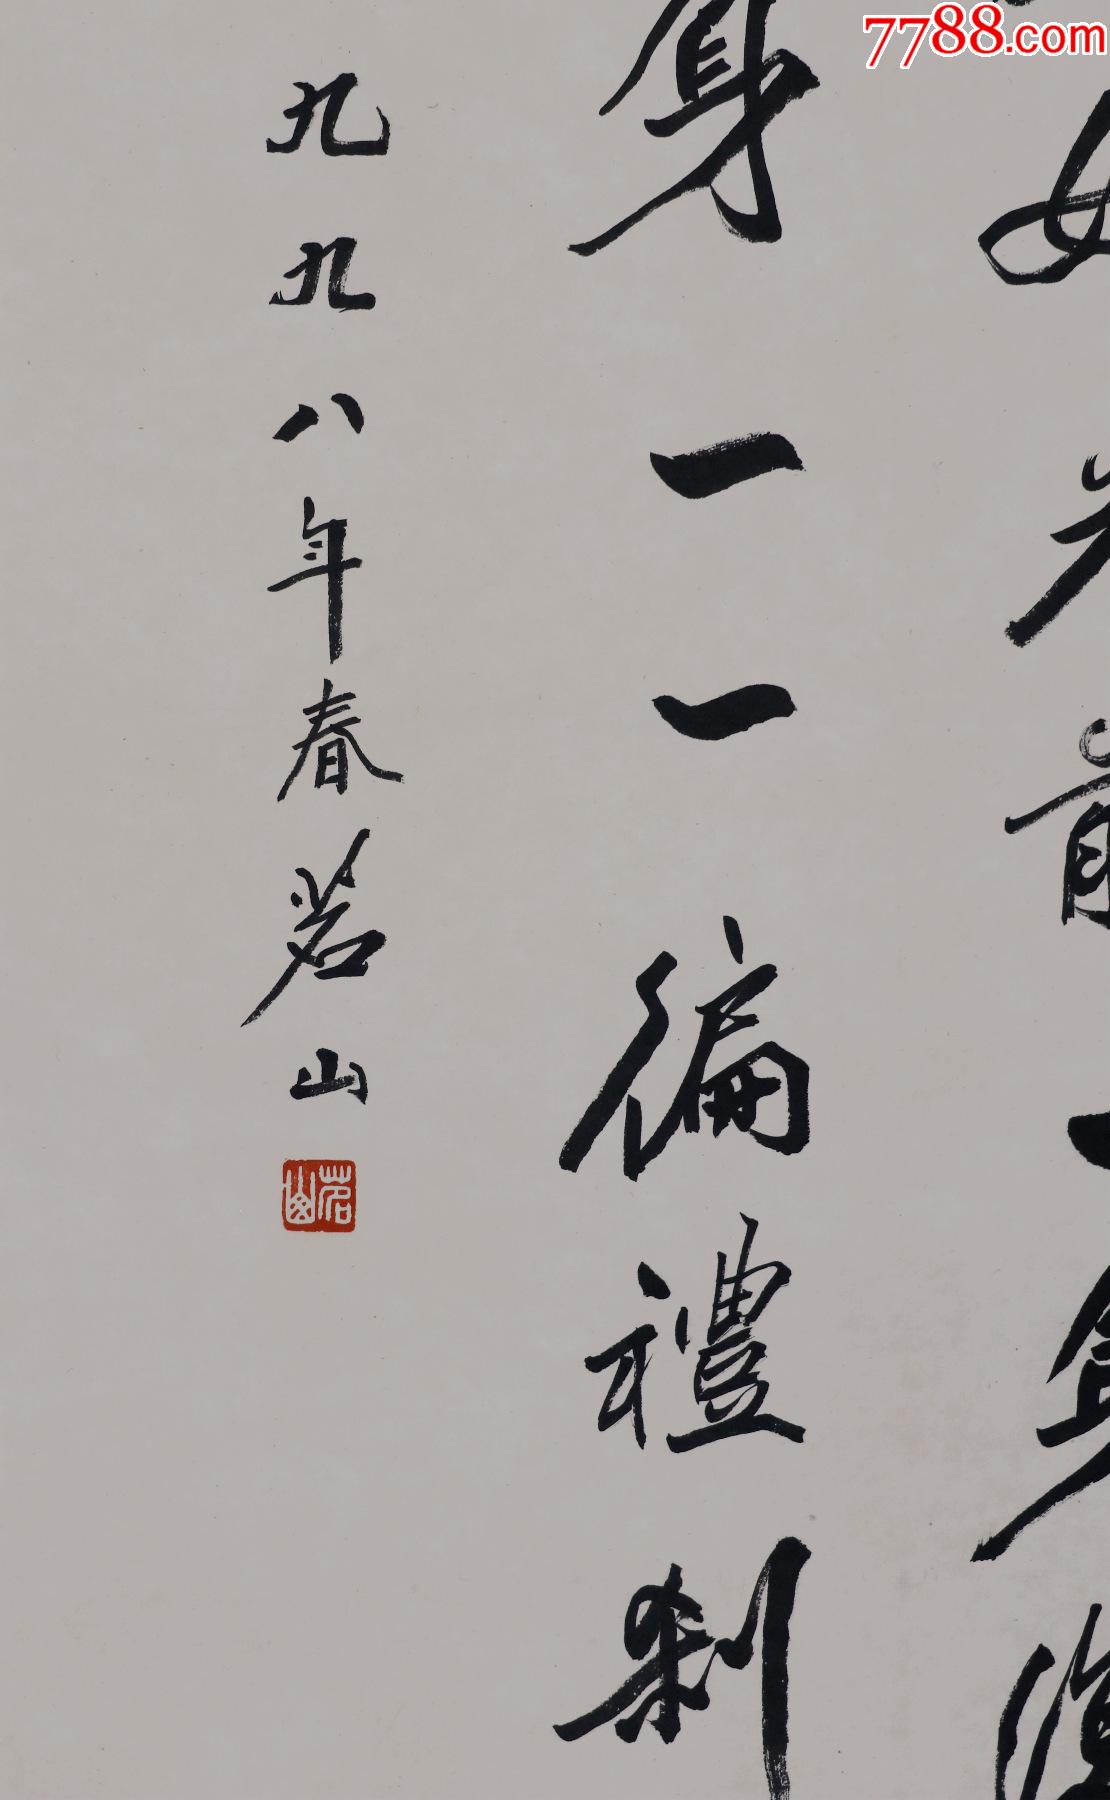 【茗山法师】中国佛教会副会长,栖霞寺方丈,书法